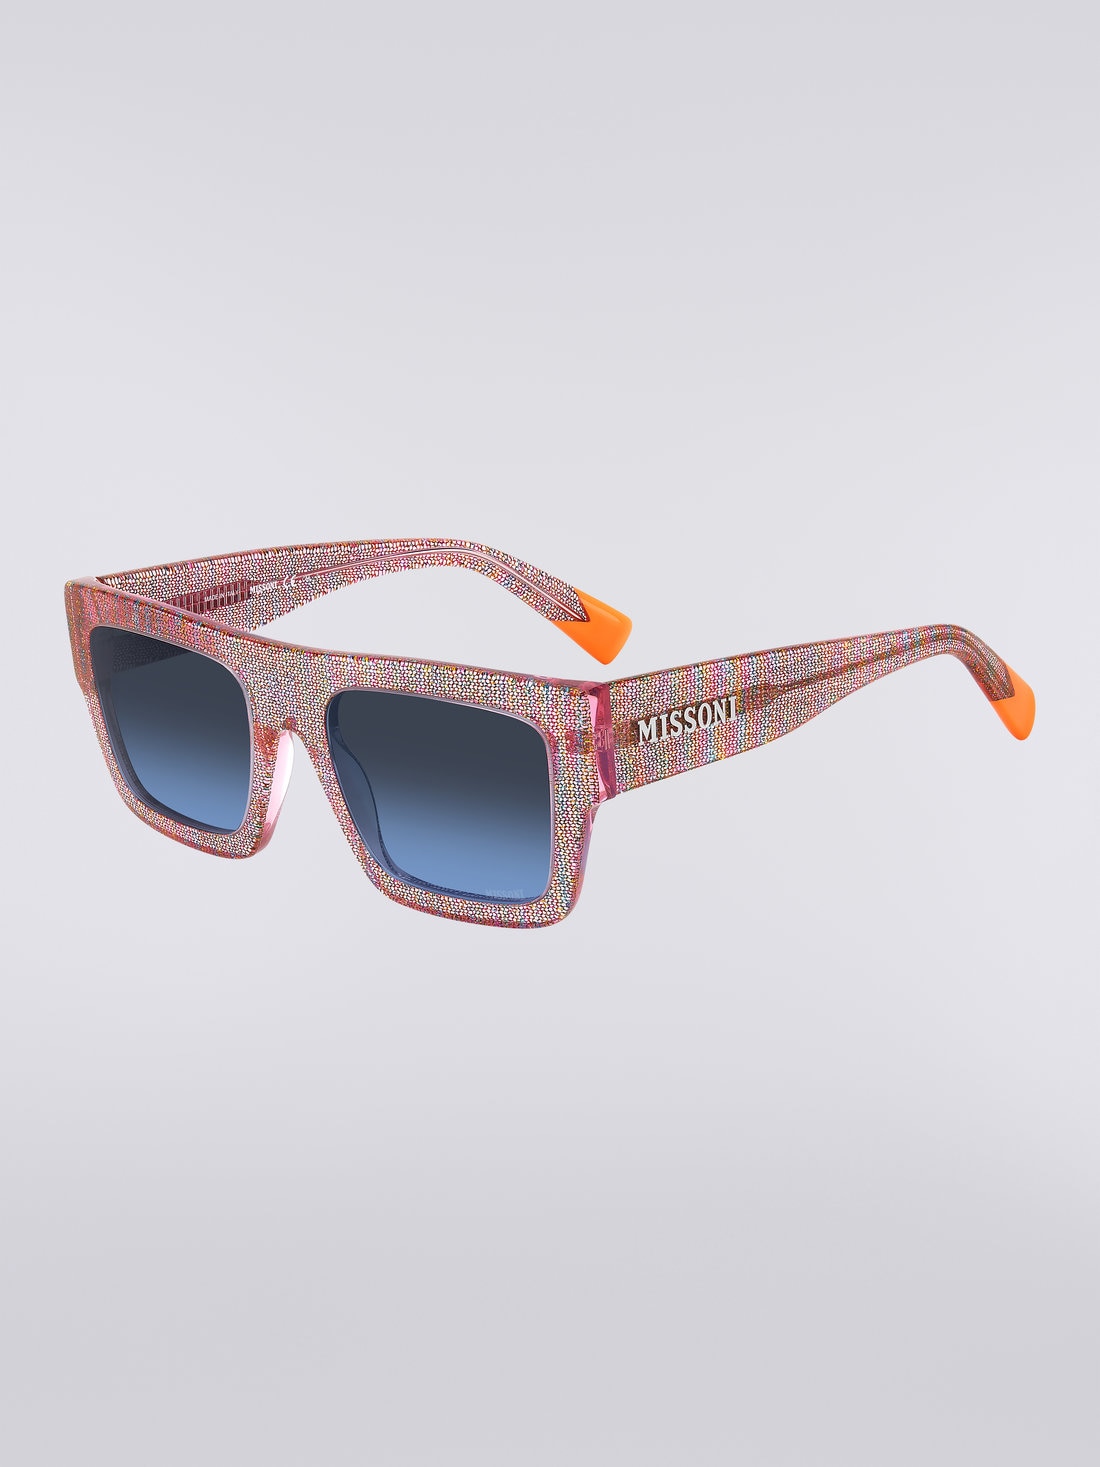 Missoni Dna Acetate Sunglasses, Multicoloured  - 8051575840289 - 1